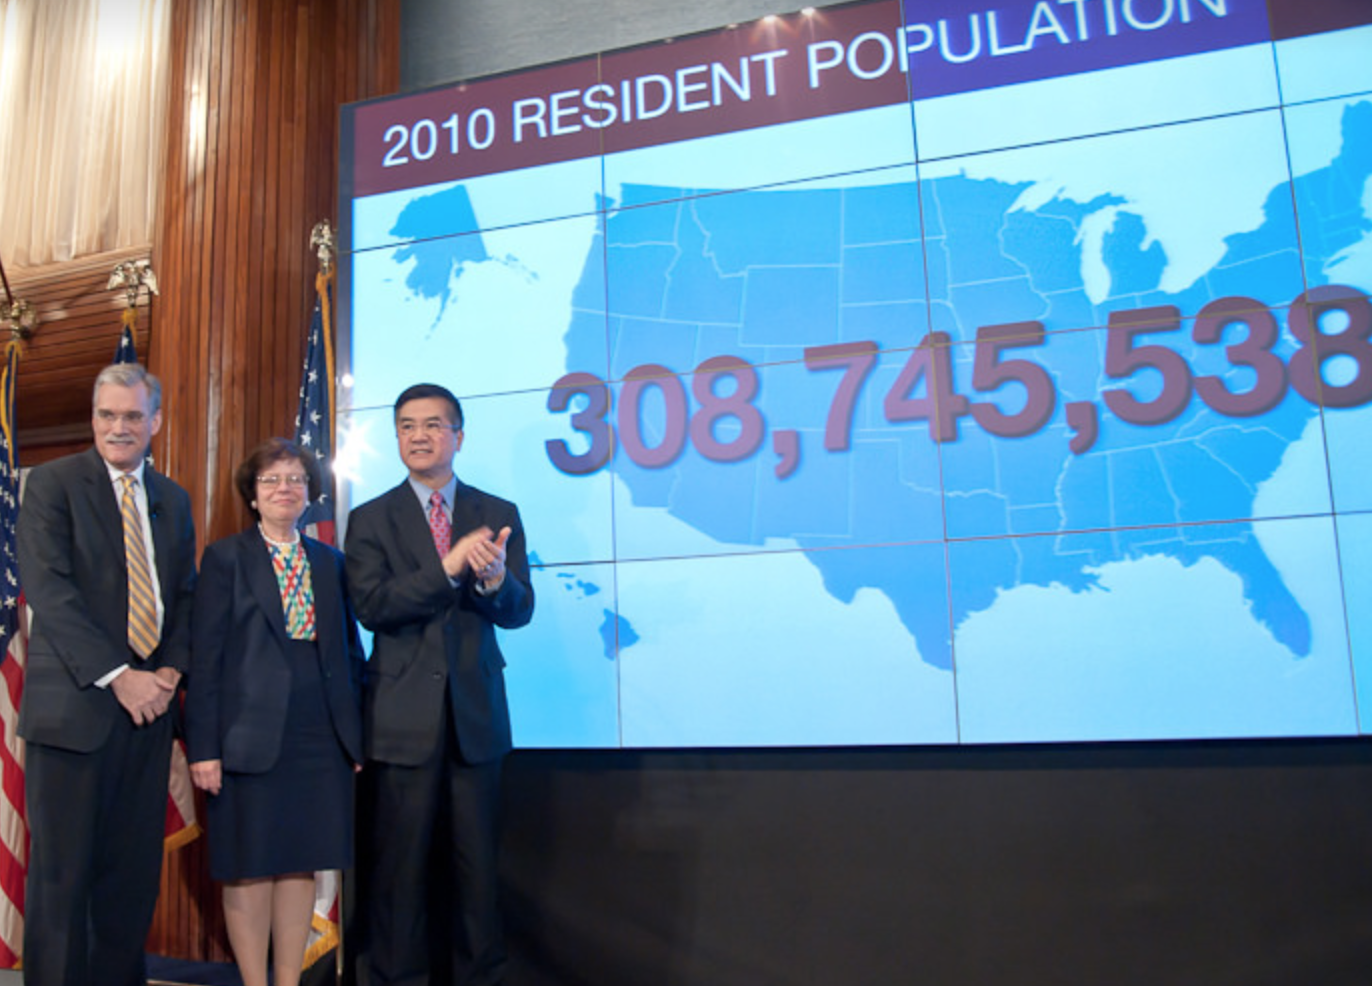 U.S. Census Bureau presentation